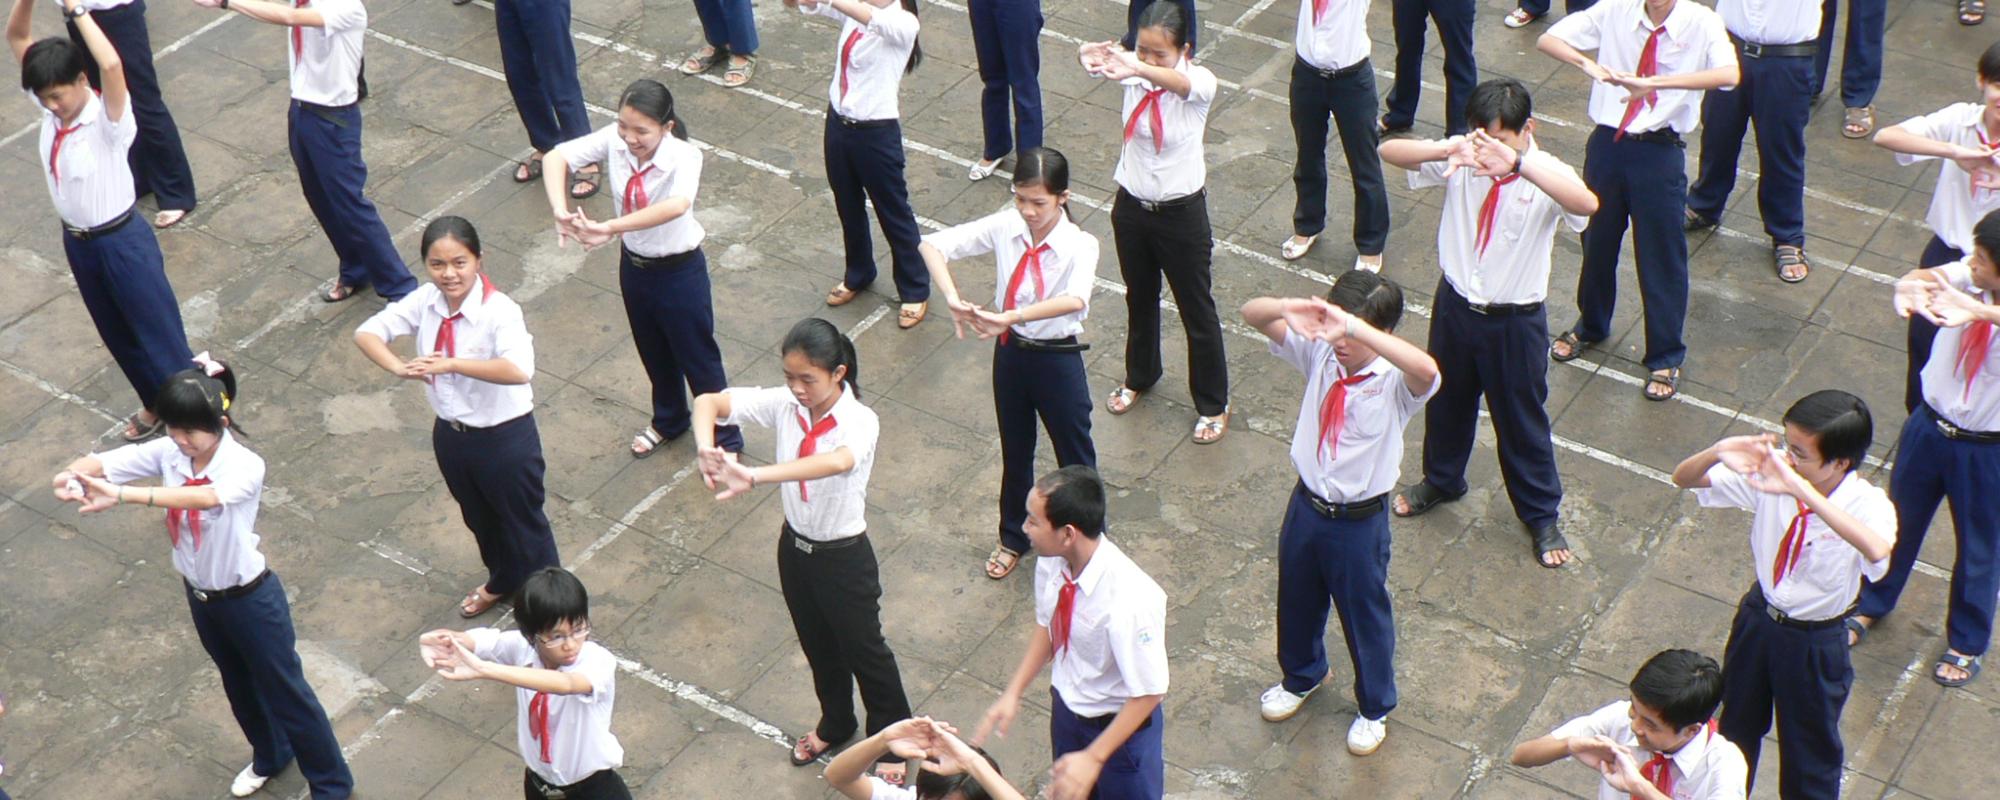 schoolyard of children stretching